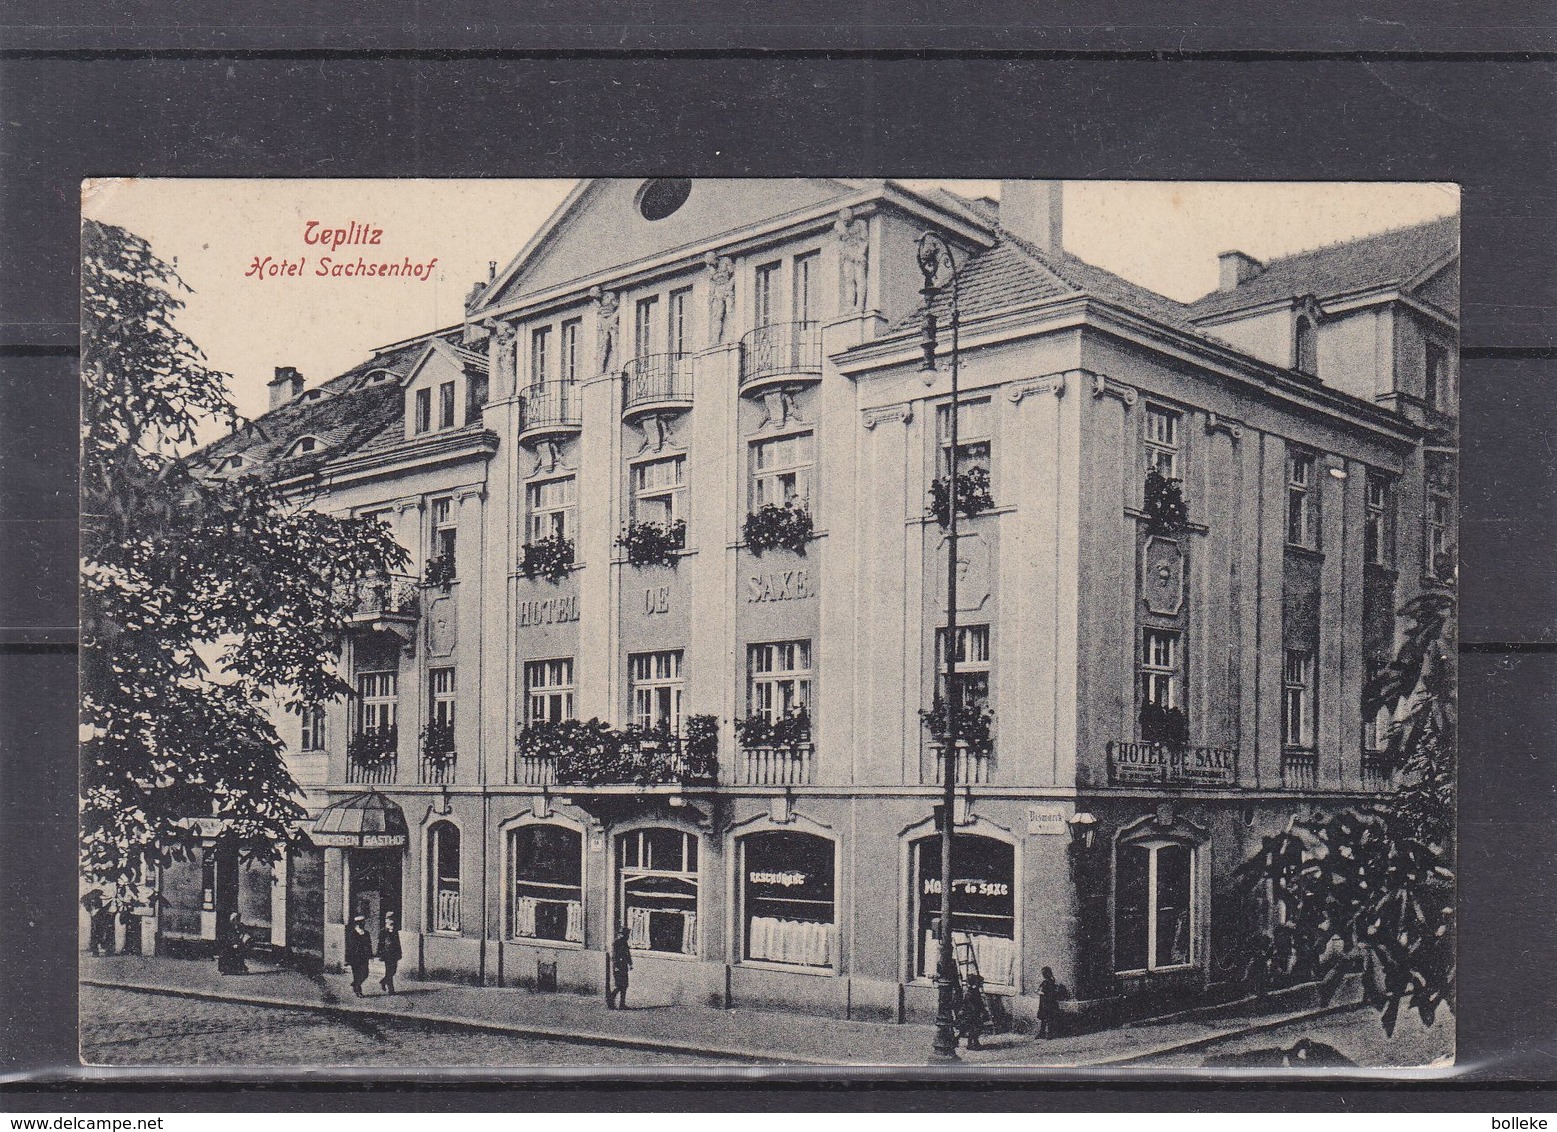 Tchècoslovaquie - Carte Postale De 1949 -  Oblit Üsti Nad Labem - Vue Hôtel Sachsenhof à Teplitz - Covers & Documents